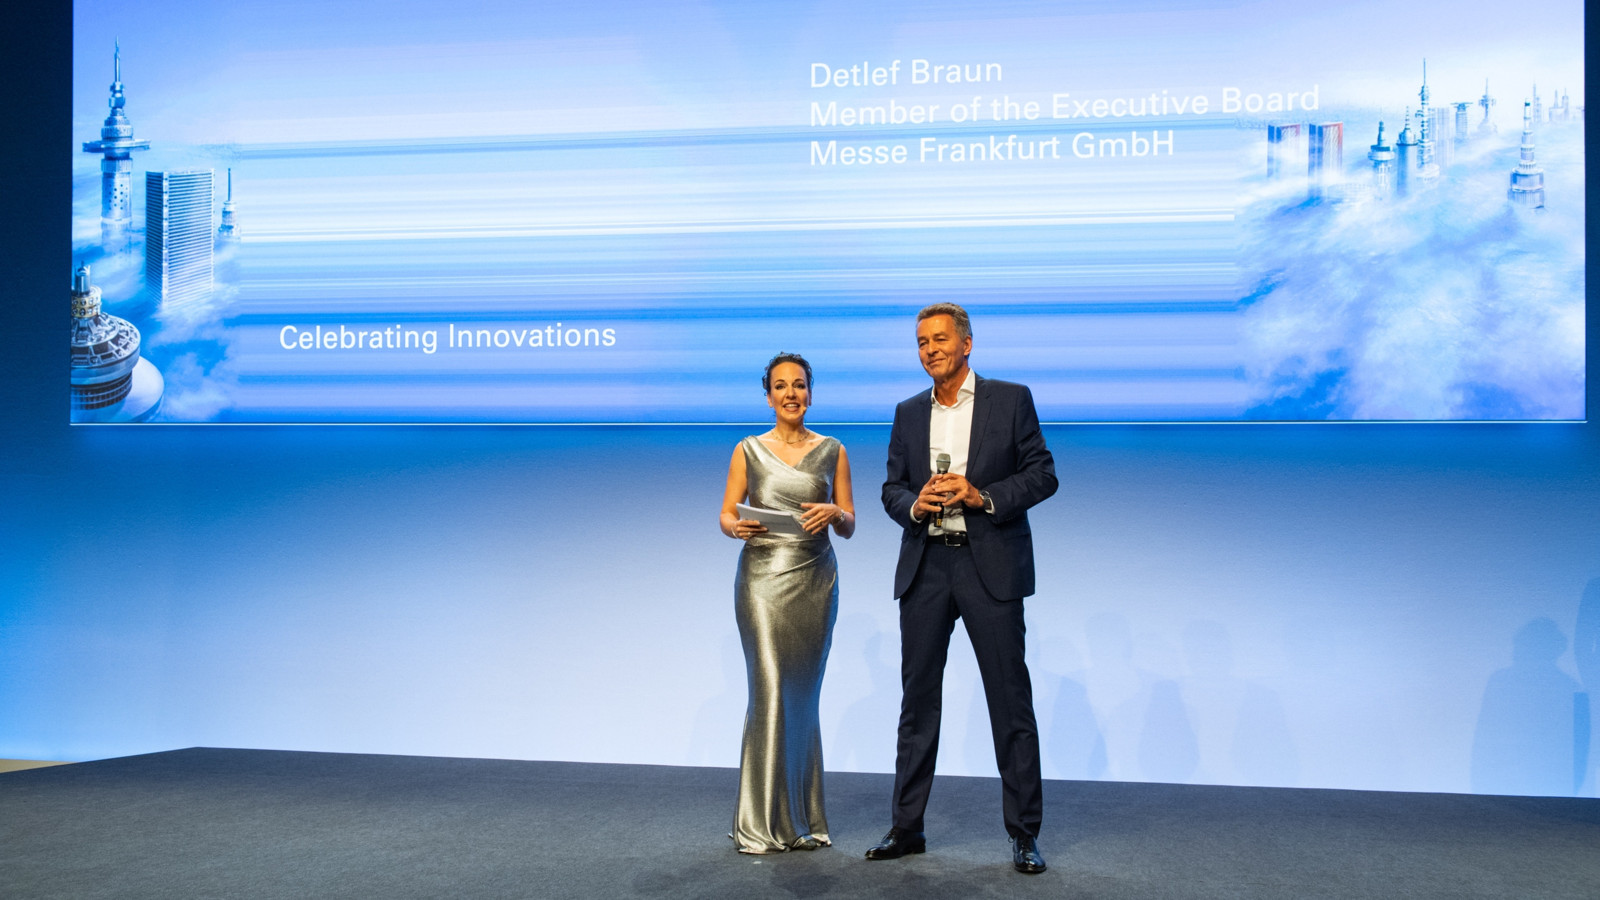 Die Verleihung der Innovation Awards im Jahr 2018 mit Messe-Chef Detlef Braun.  